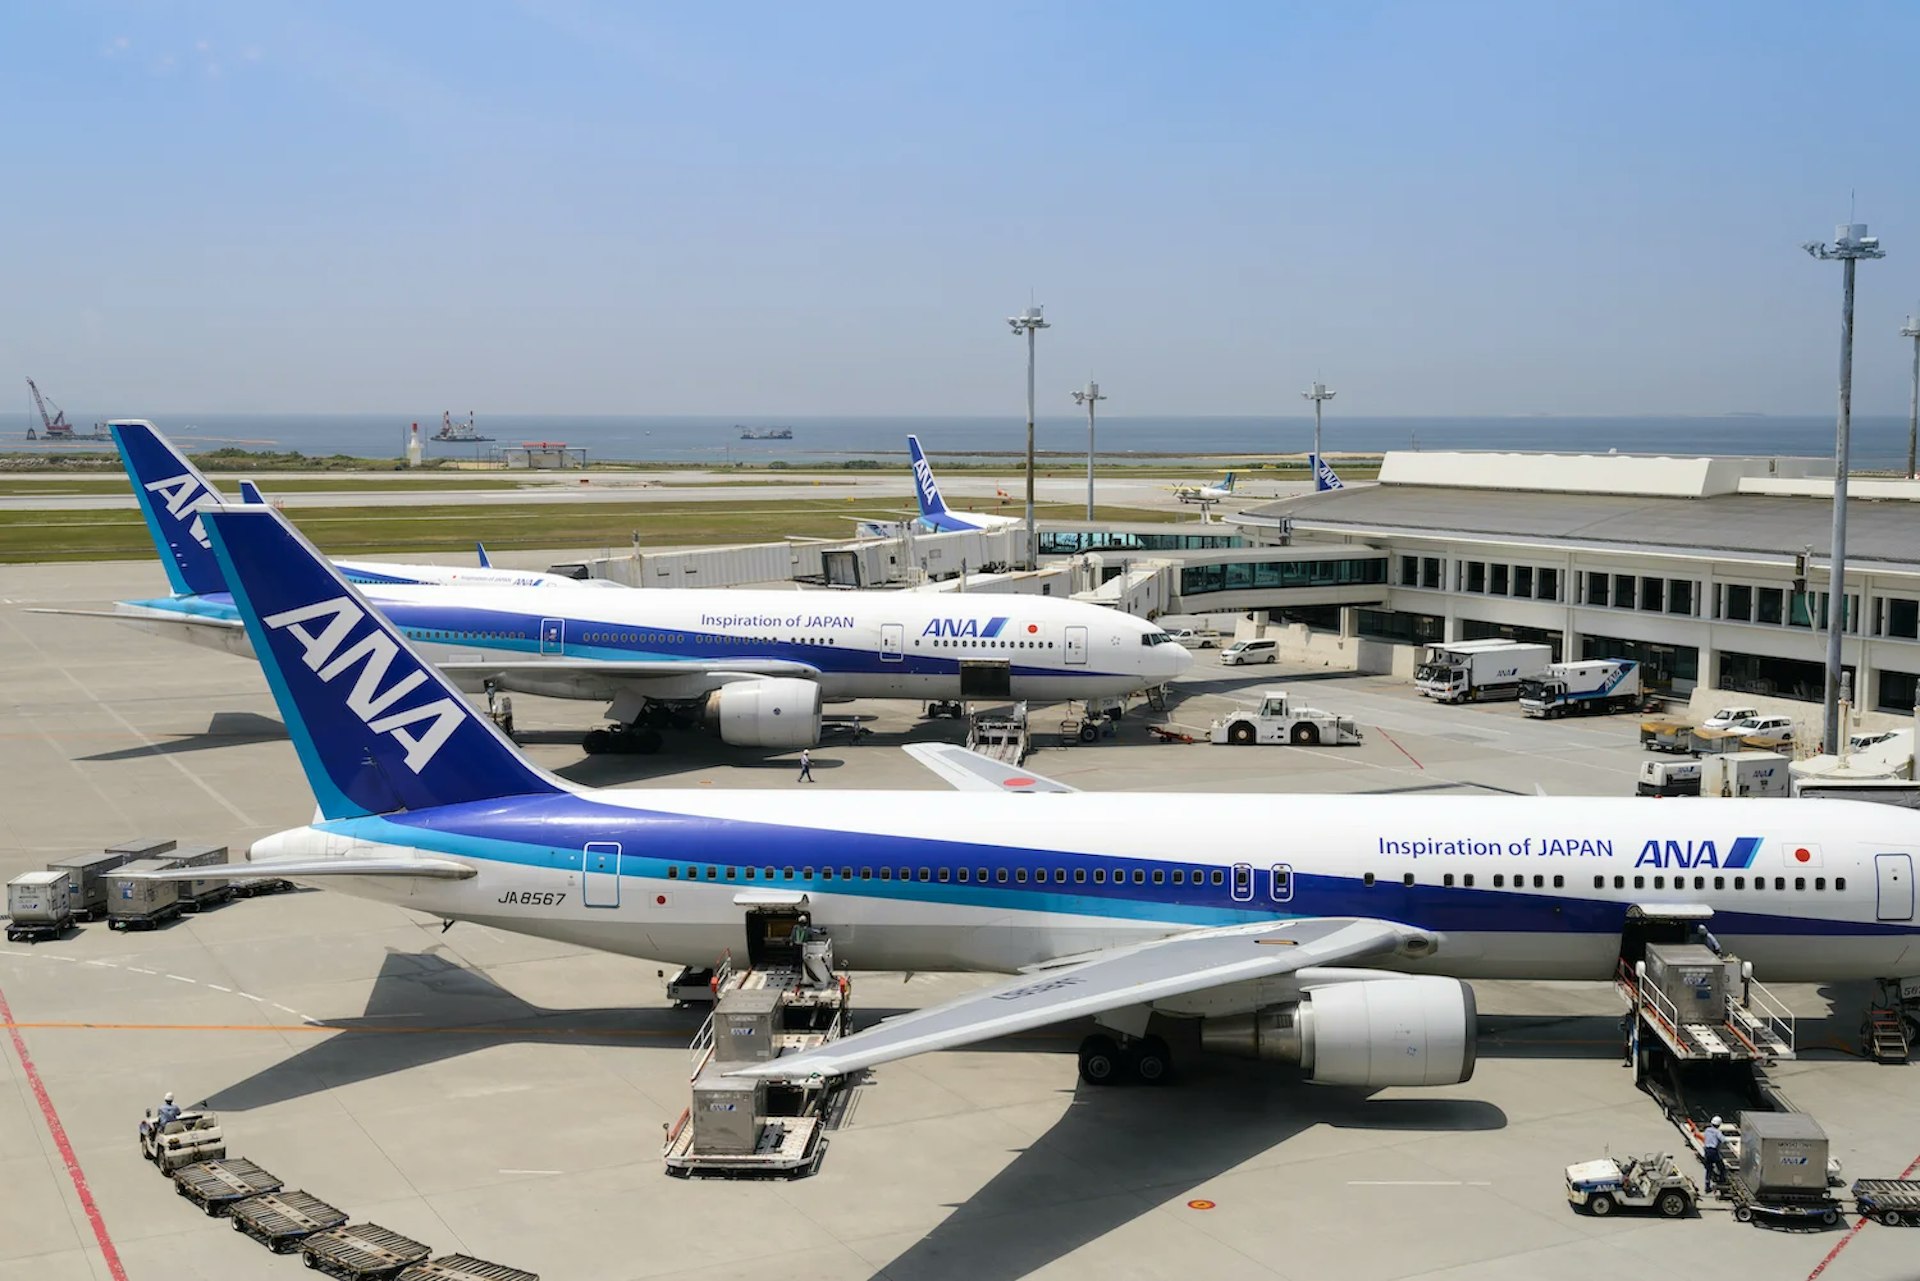 ANA fleet at Tokyo Narita Airport